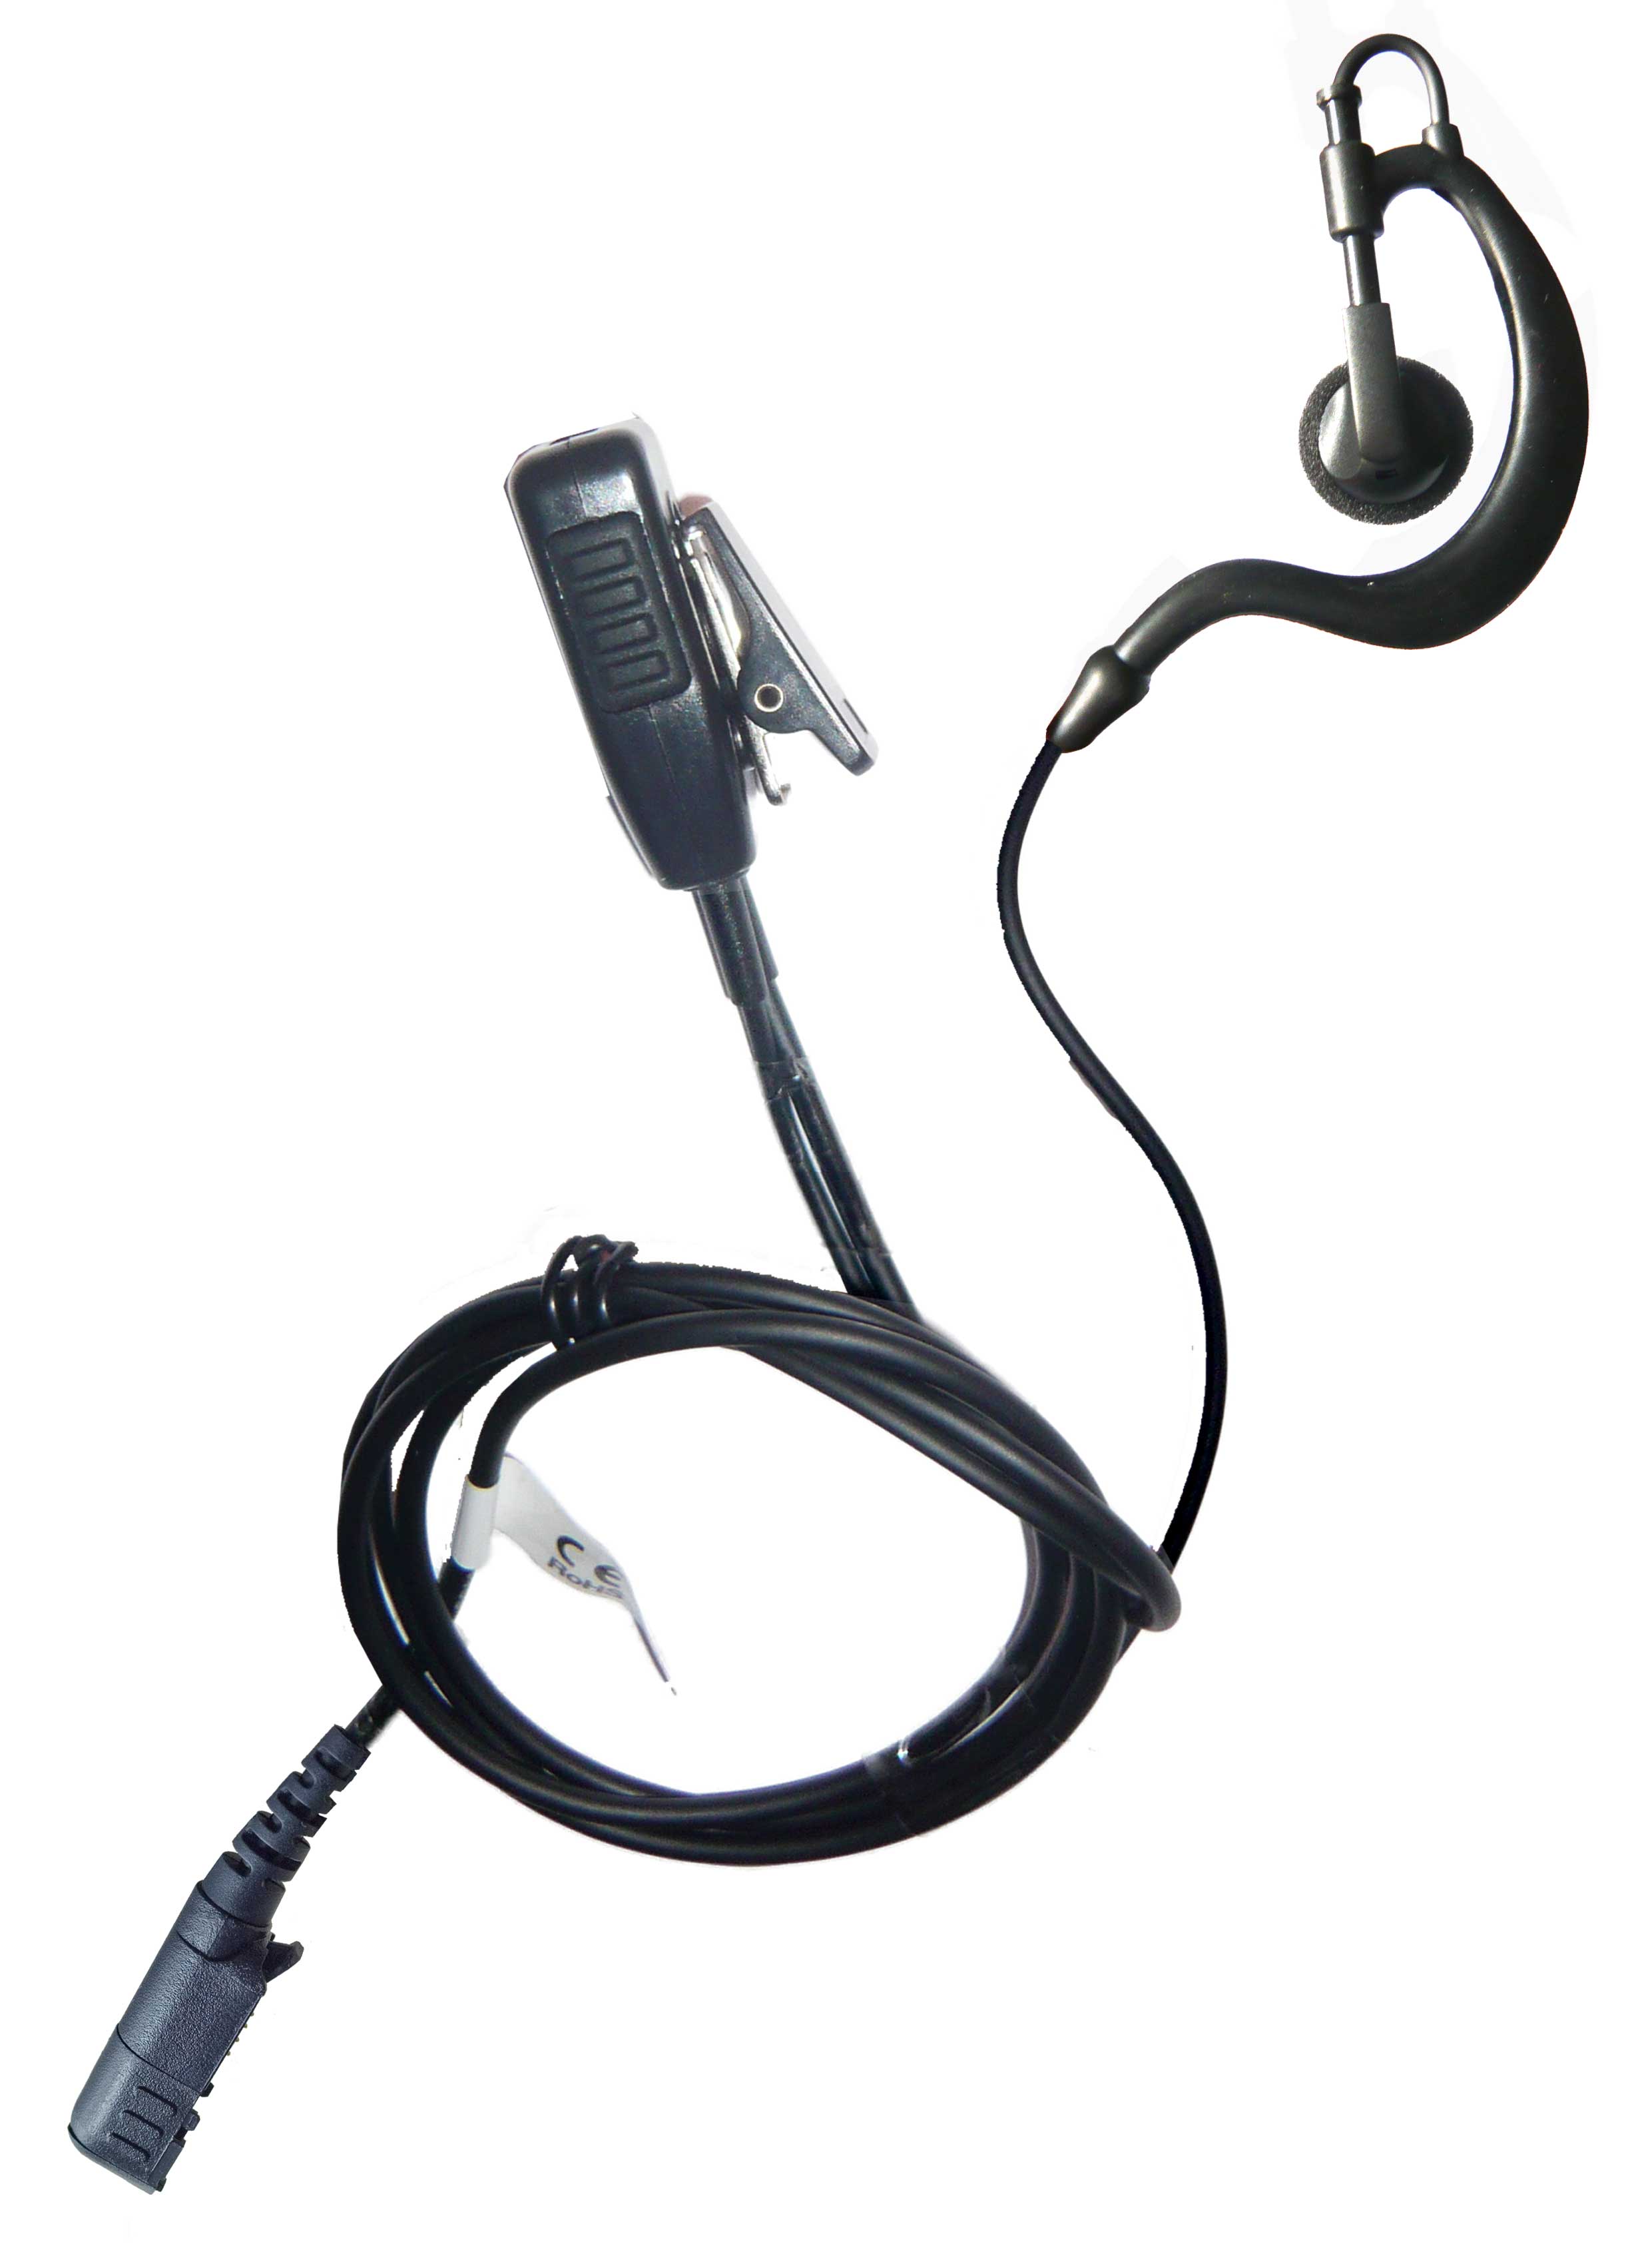 Motorola DP2400, DP2600, DP3441 G shape earpiece